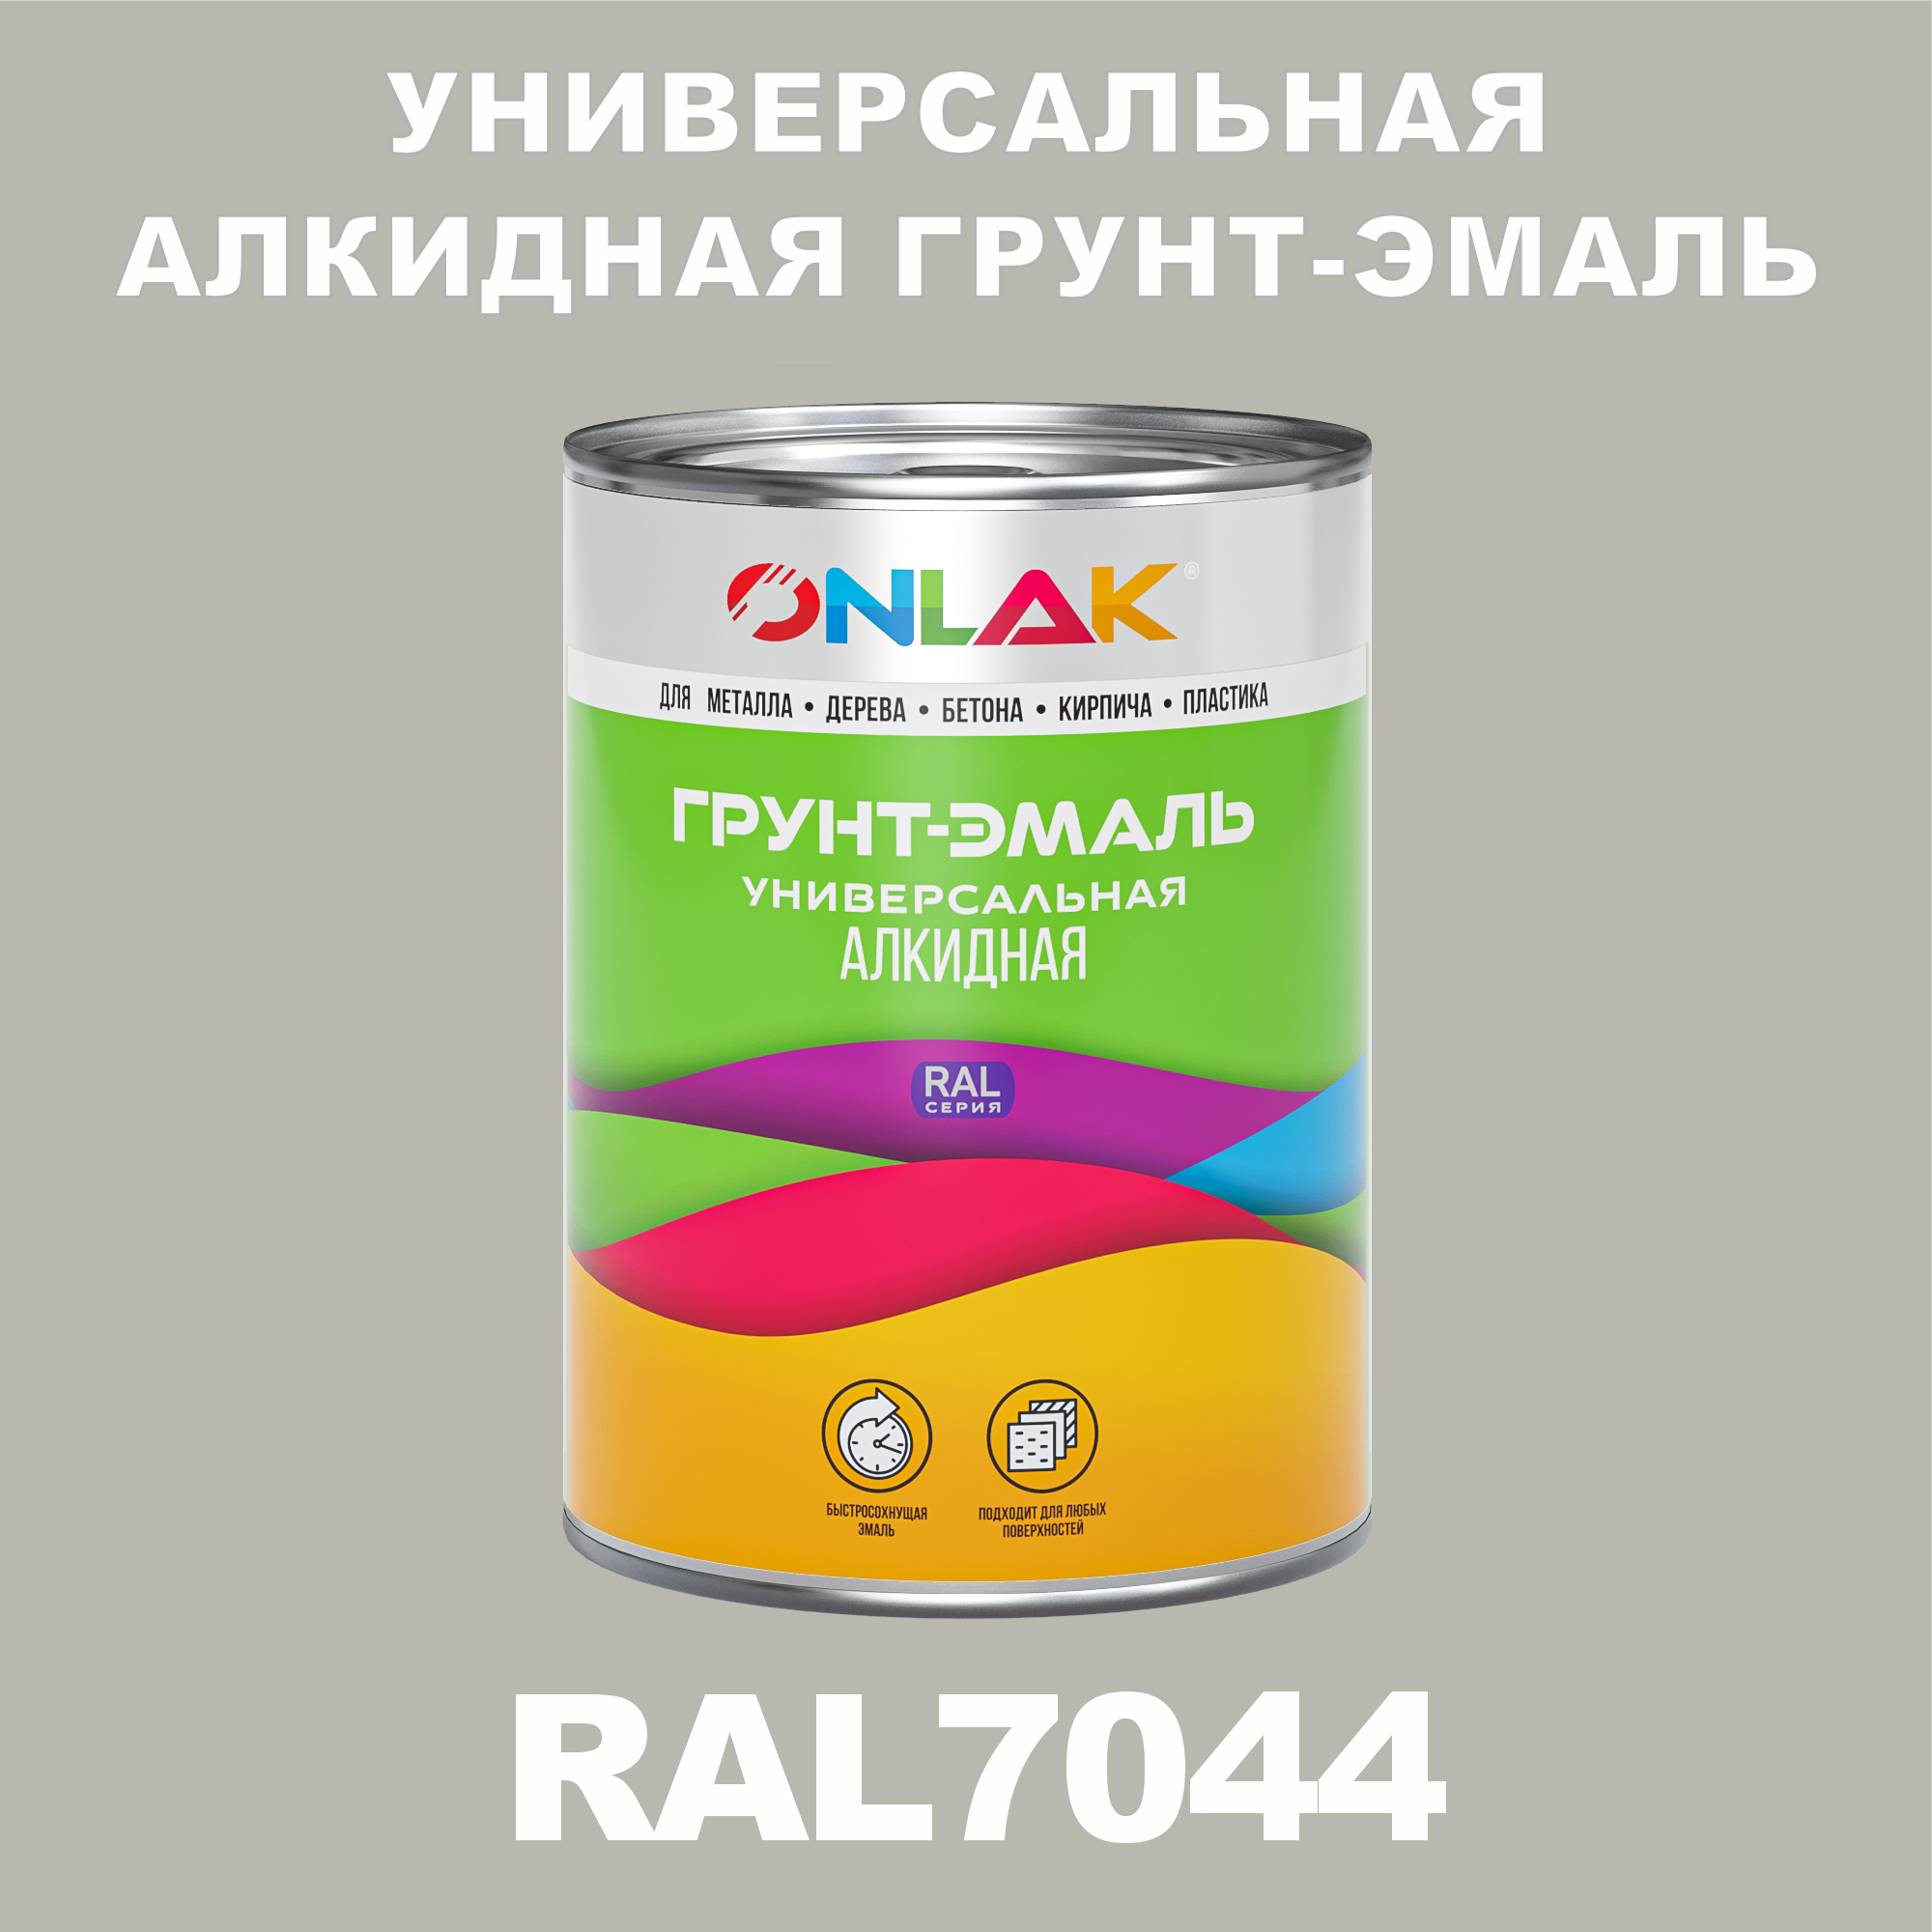 Грунт-эмаль ONLAK 1К RAL7044 антикоррозионная алкидная по металлу по ржавчине 1 кг грунт эмаль аэрозольная престиж 3в1 алкидная коричневая ral 8017 425 мл 0 425 кг